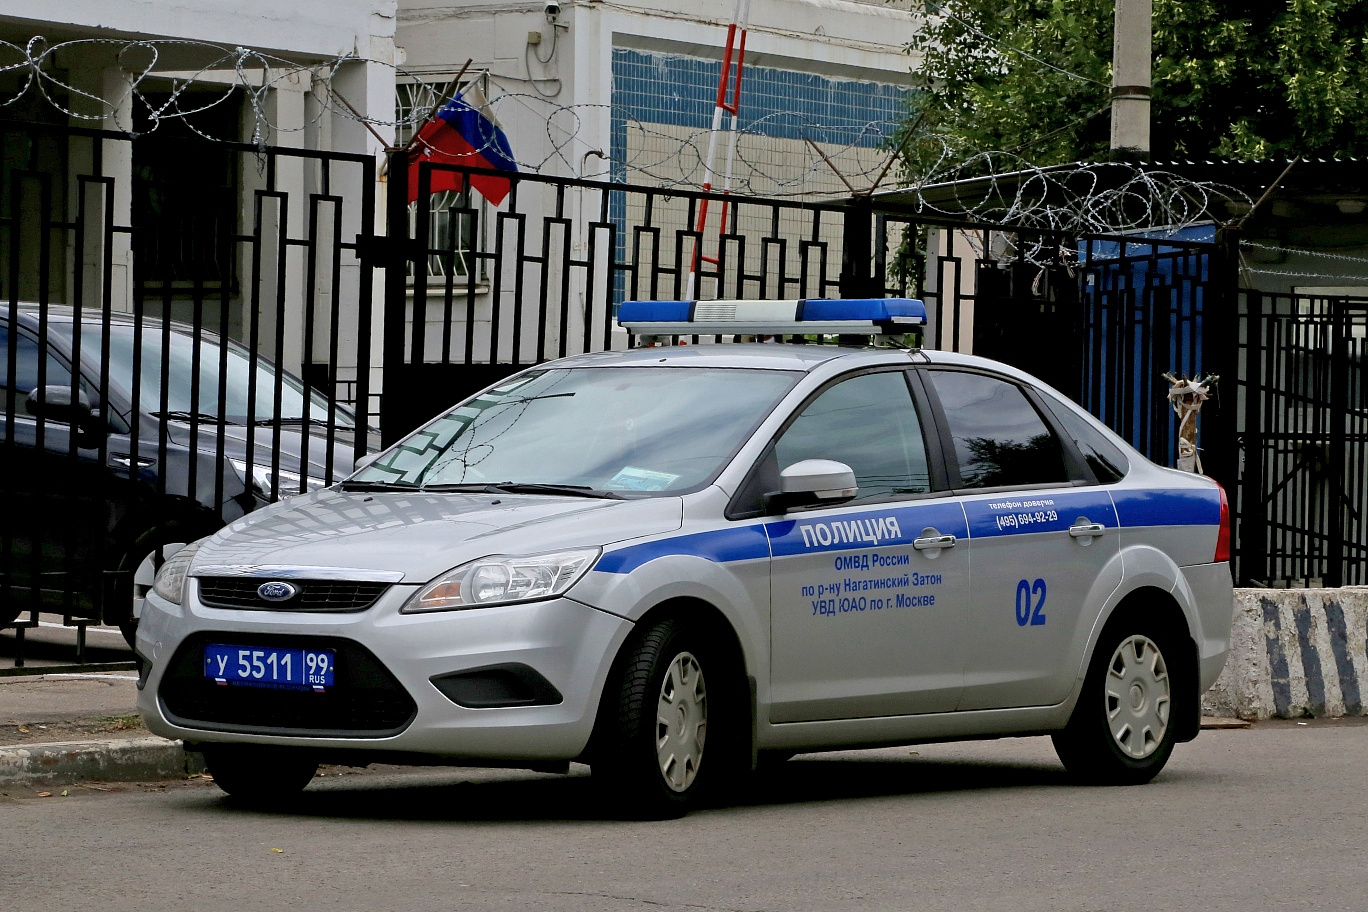 Полицейские автомобили Москвы